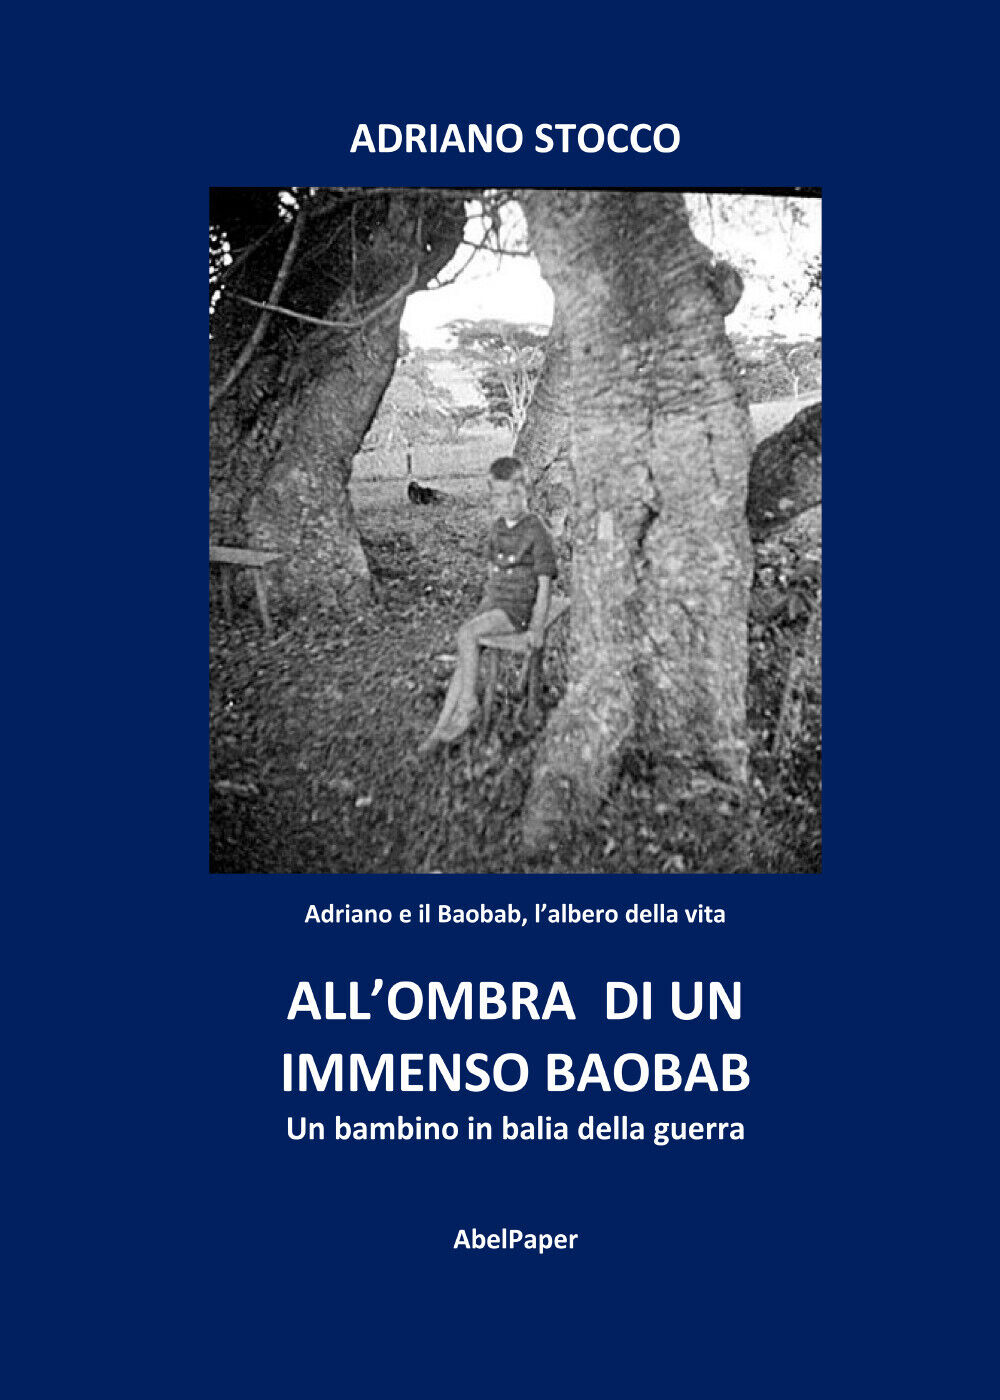 AlL'ombra di un immenso baobab di Adriano Stocco,  2022,  Abelpaper